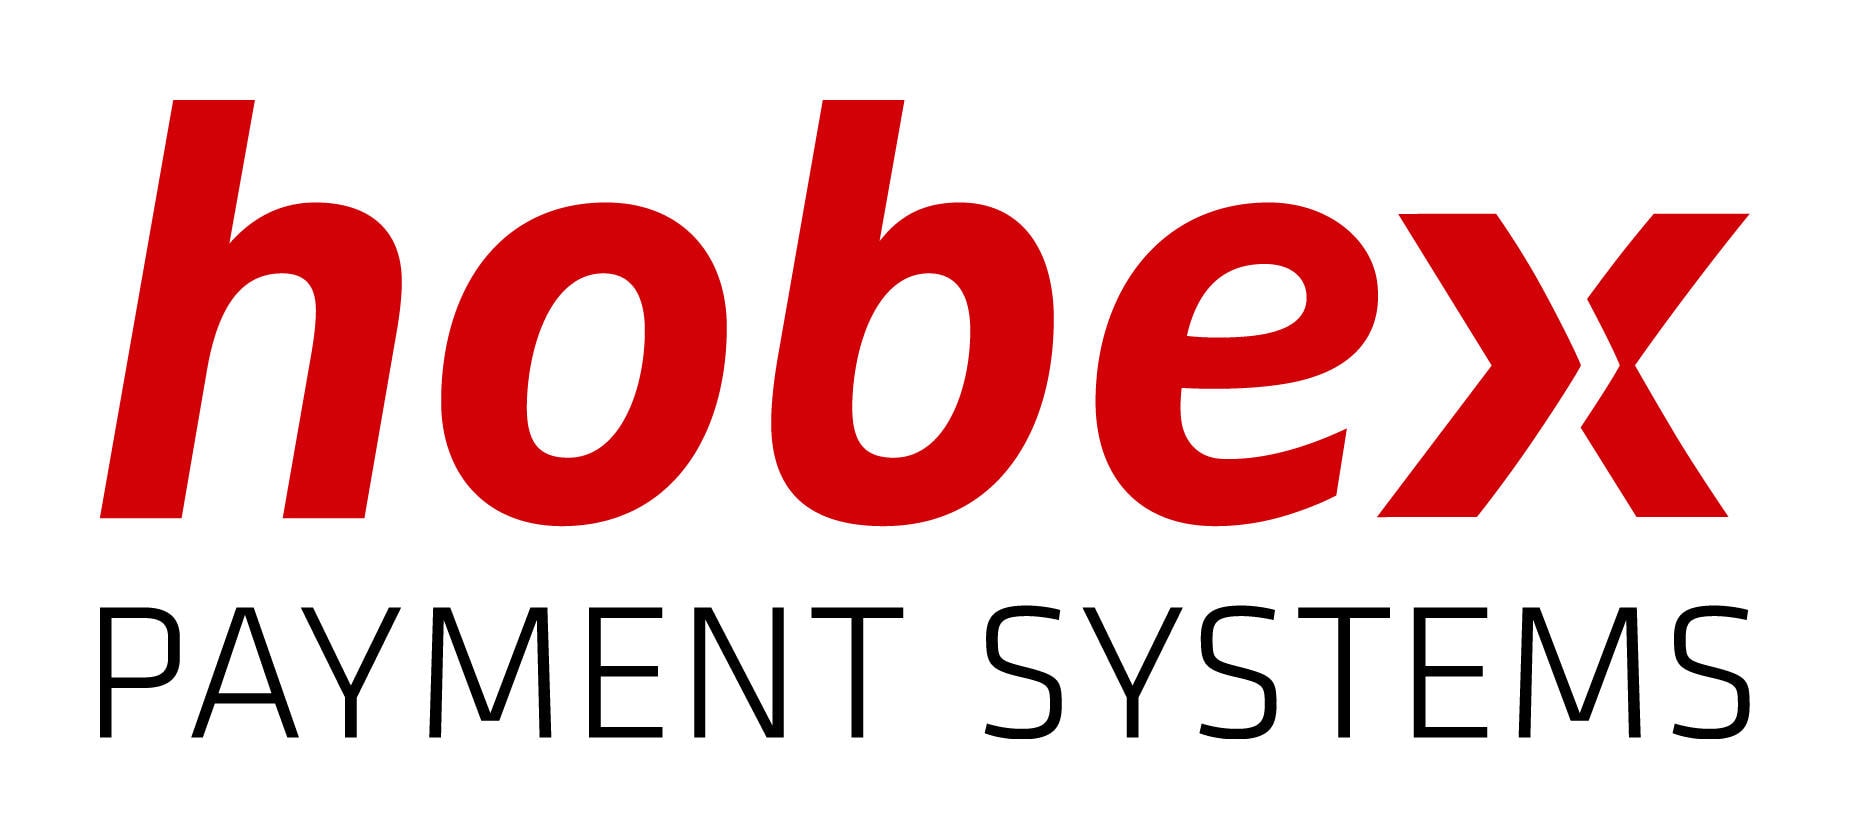 hobex logo cmyk v4